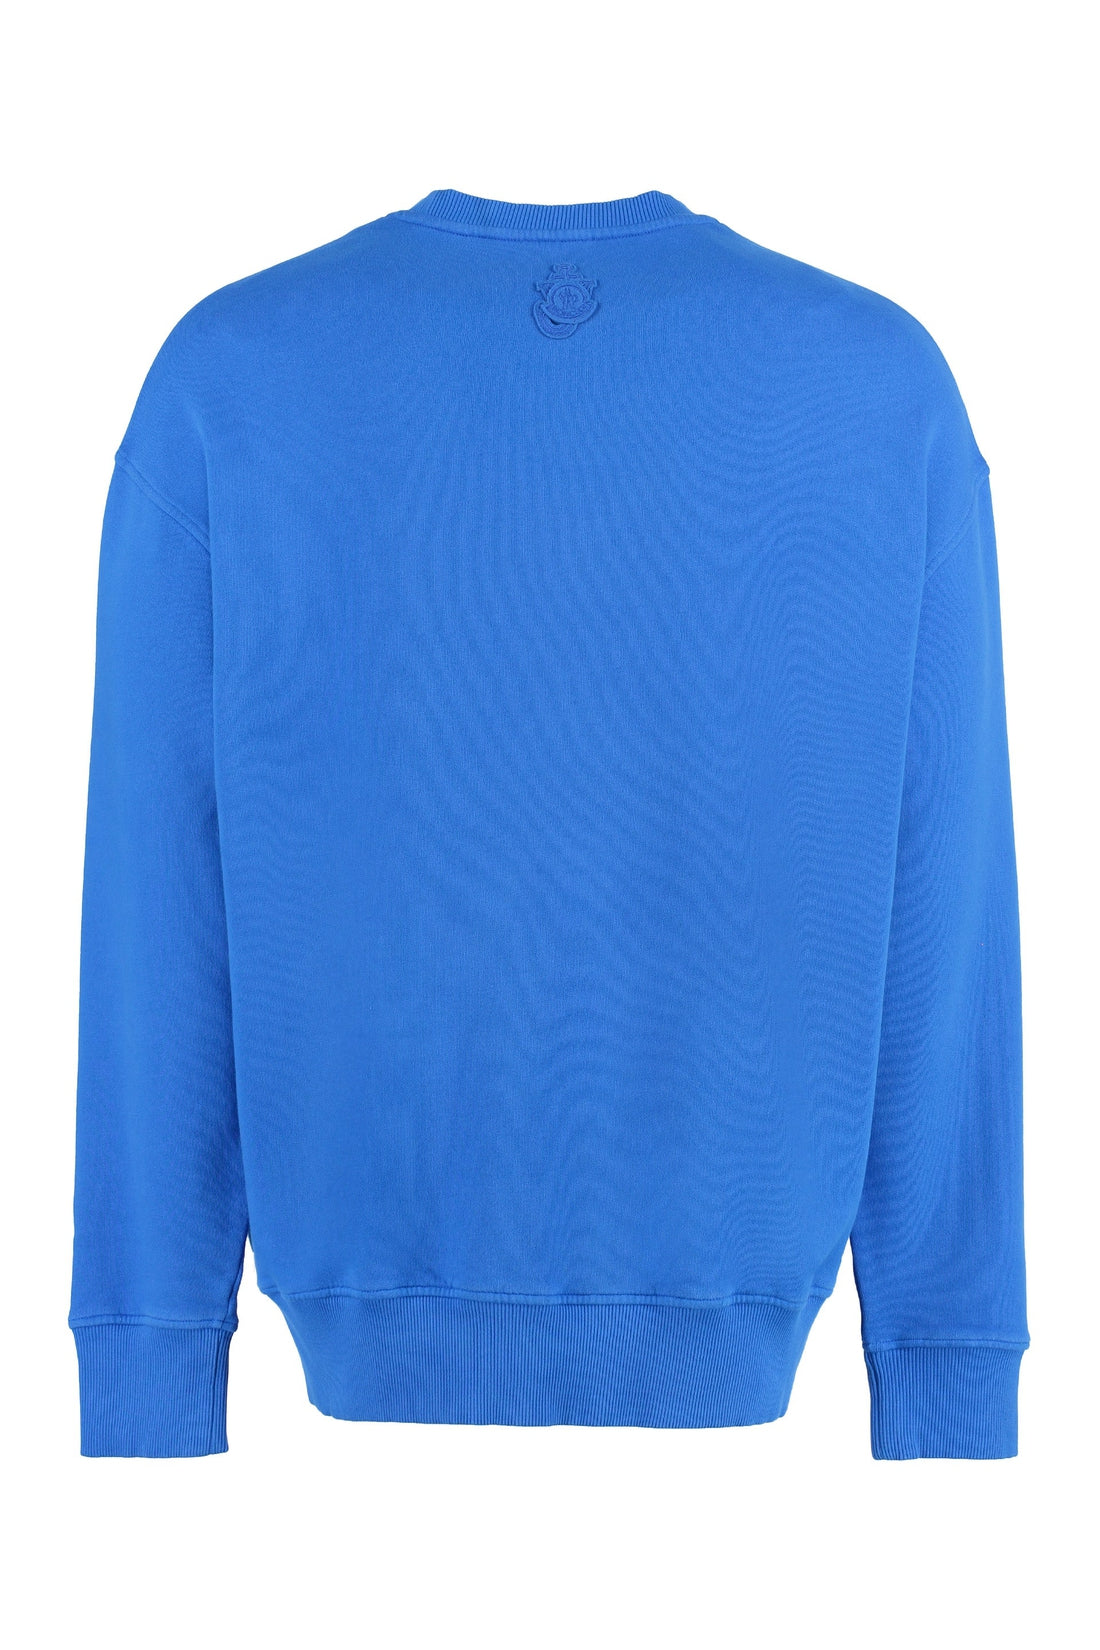 Moncler Genius-OUTLET-SALE-1 Moncler JW Anderson - Logo detail cotton sweatshirt-ARCHIVIST